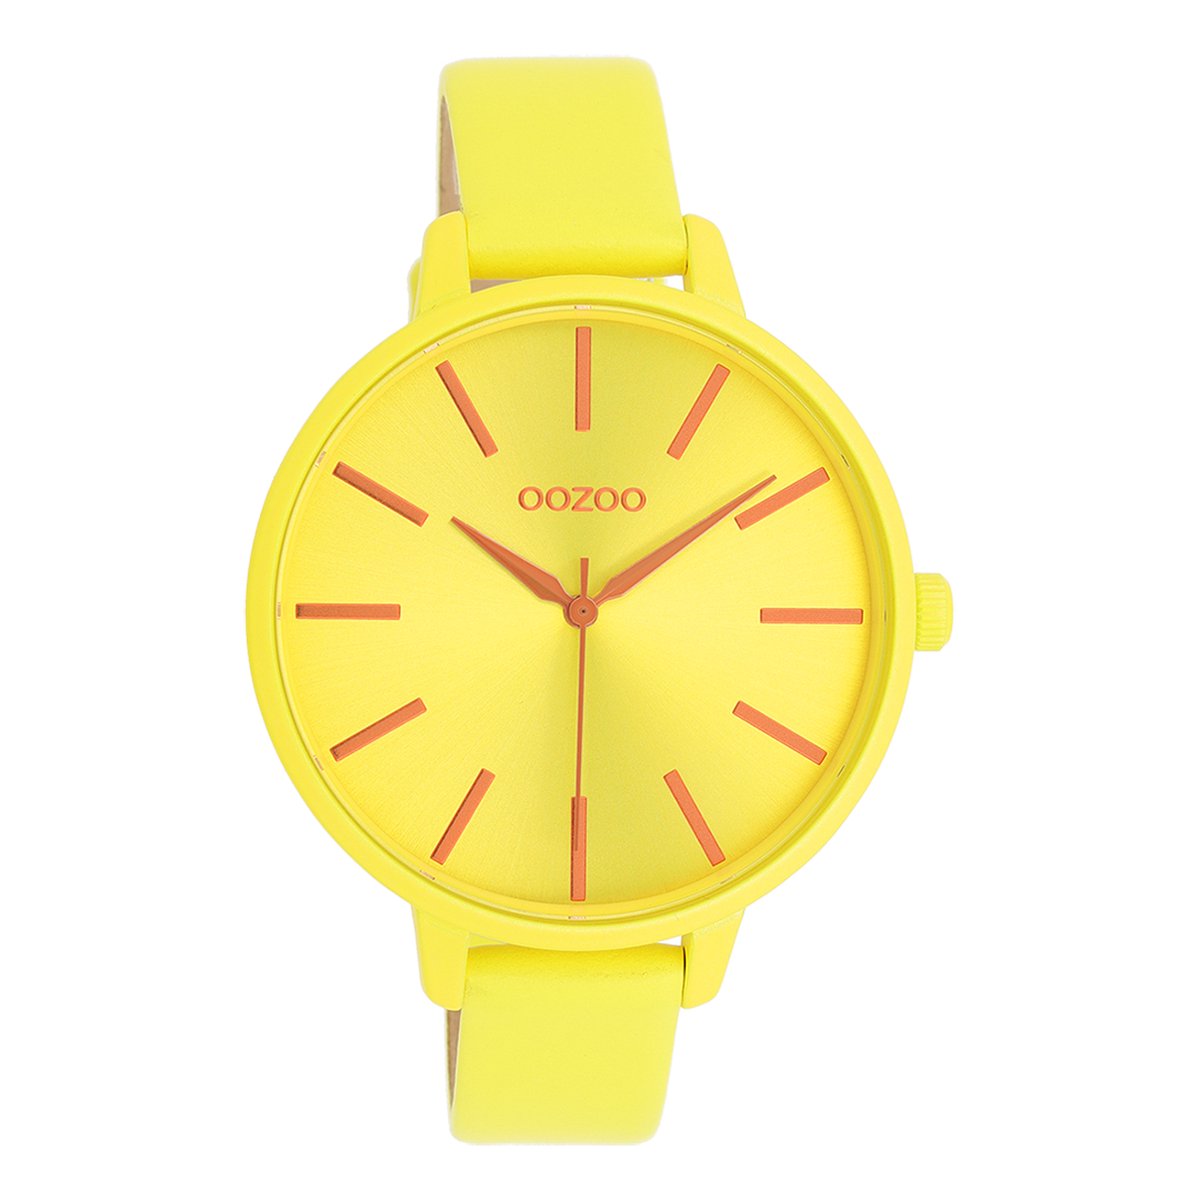 OOZOO Timepieces - Neon gele OOZOO horloge met neon gele leren band - C11184